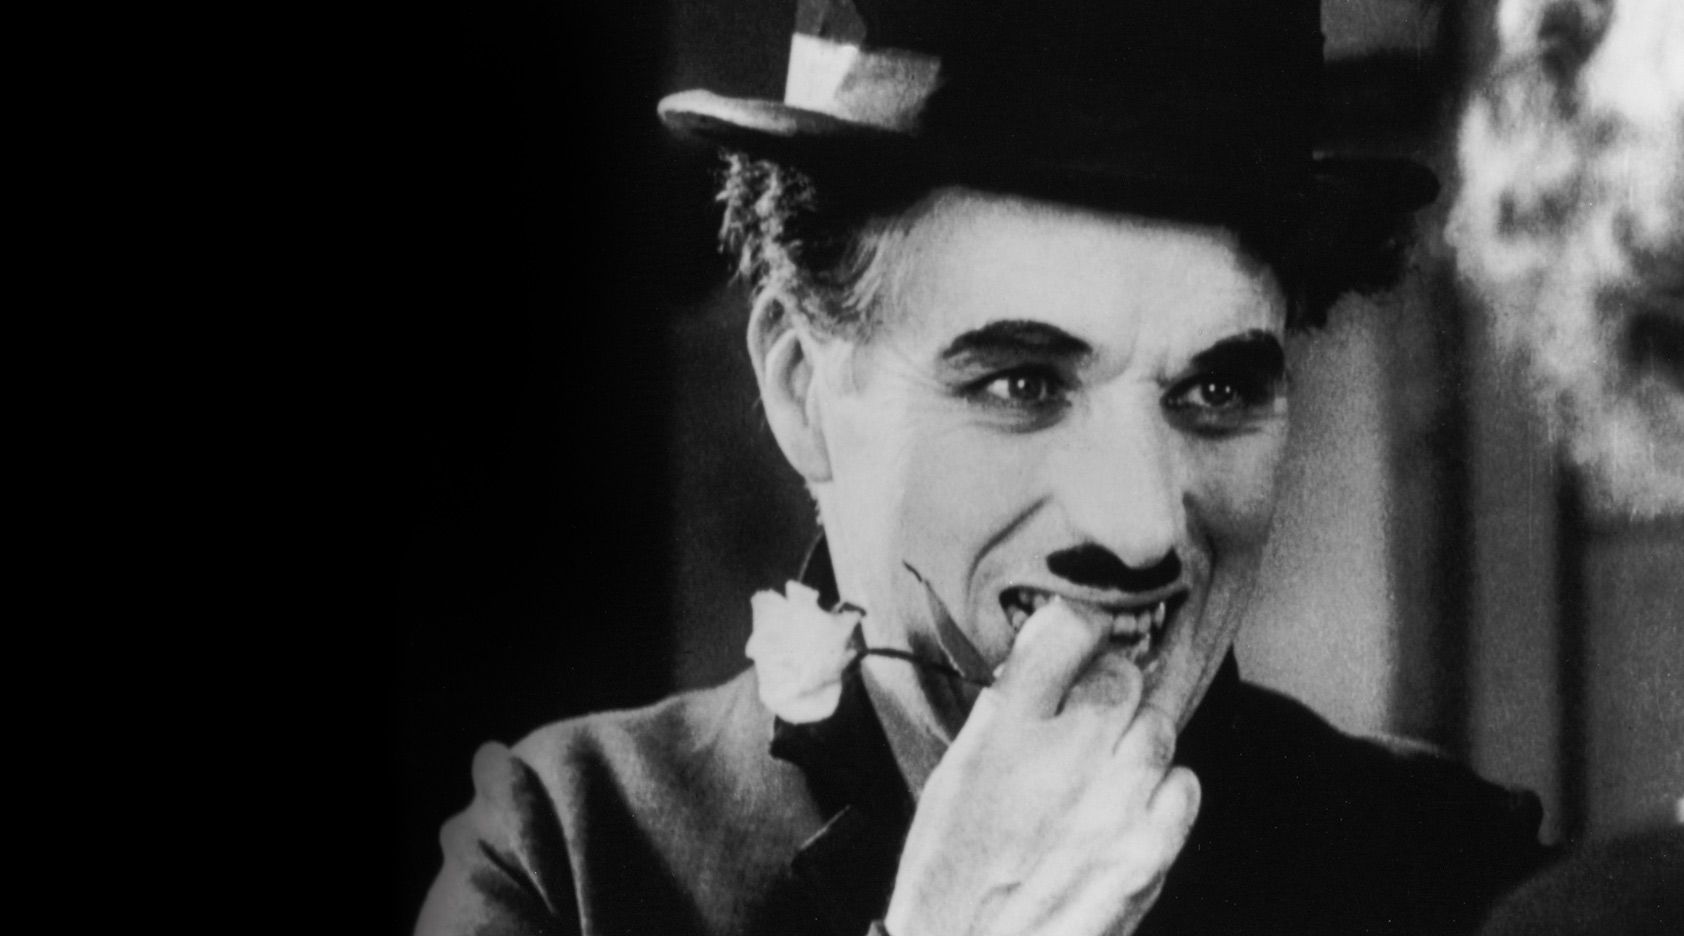 La carriera di Charlie Chaplin - immagine 2